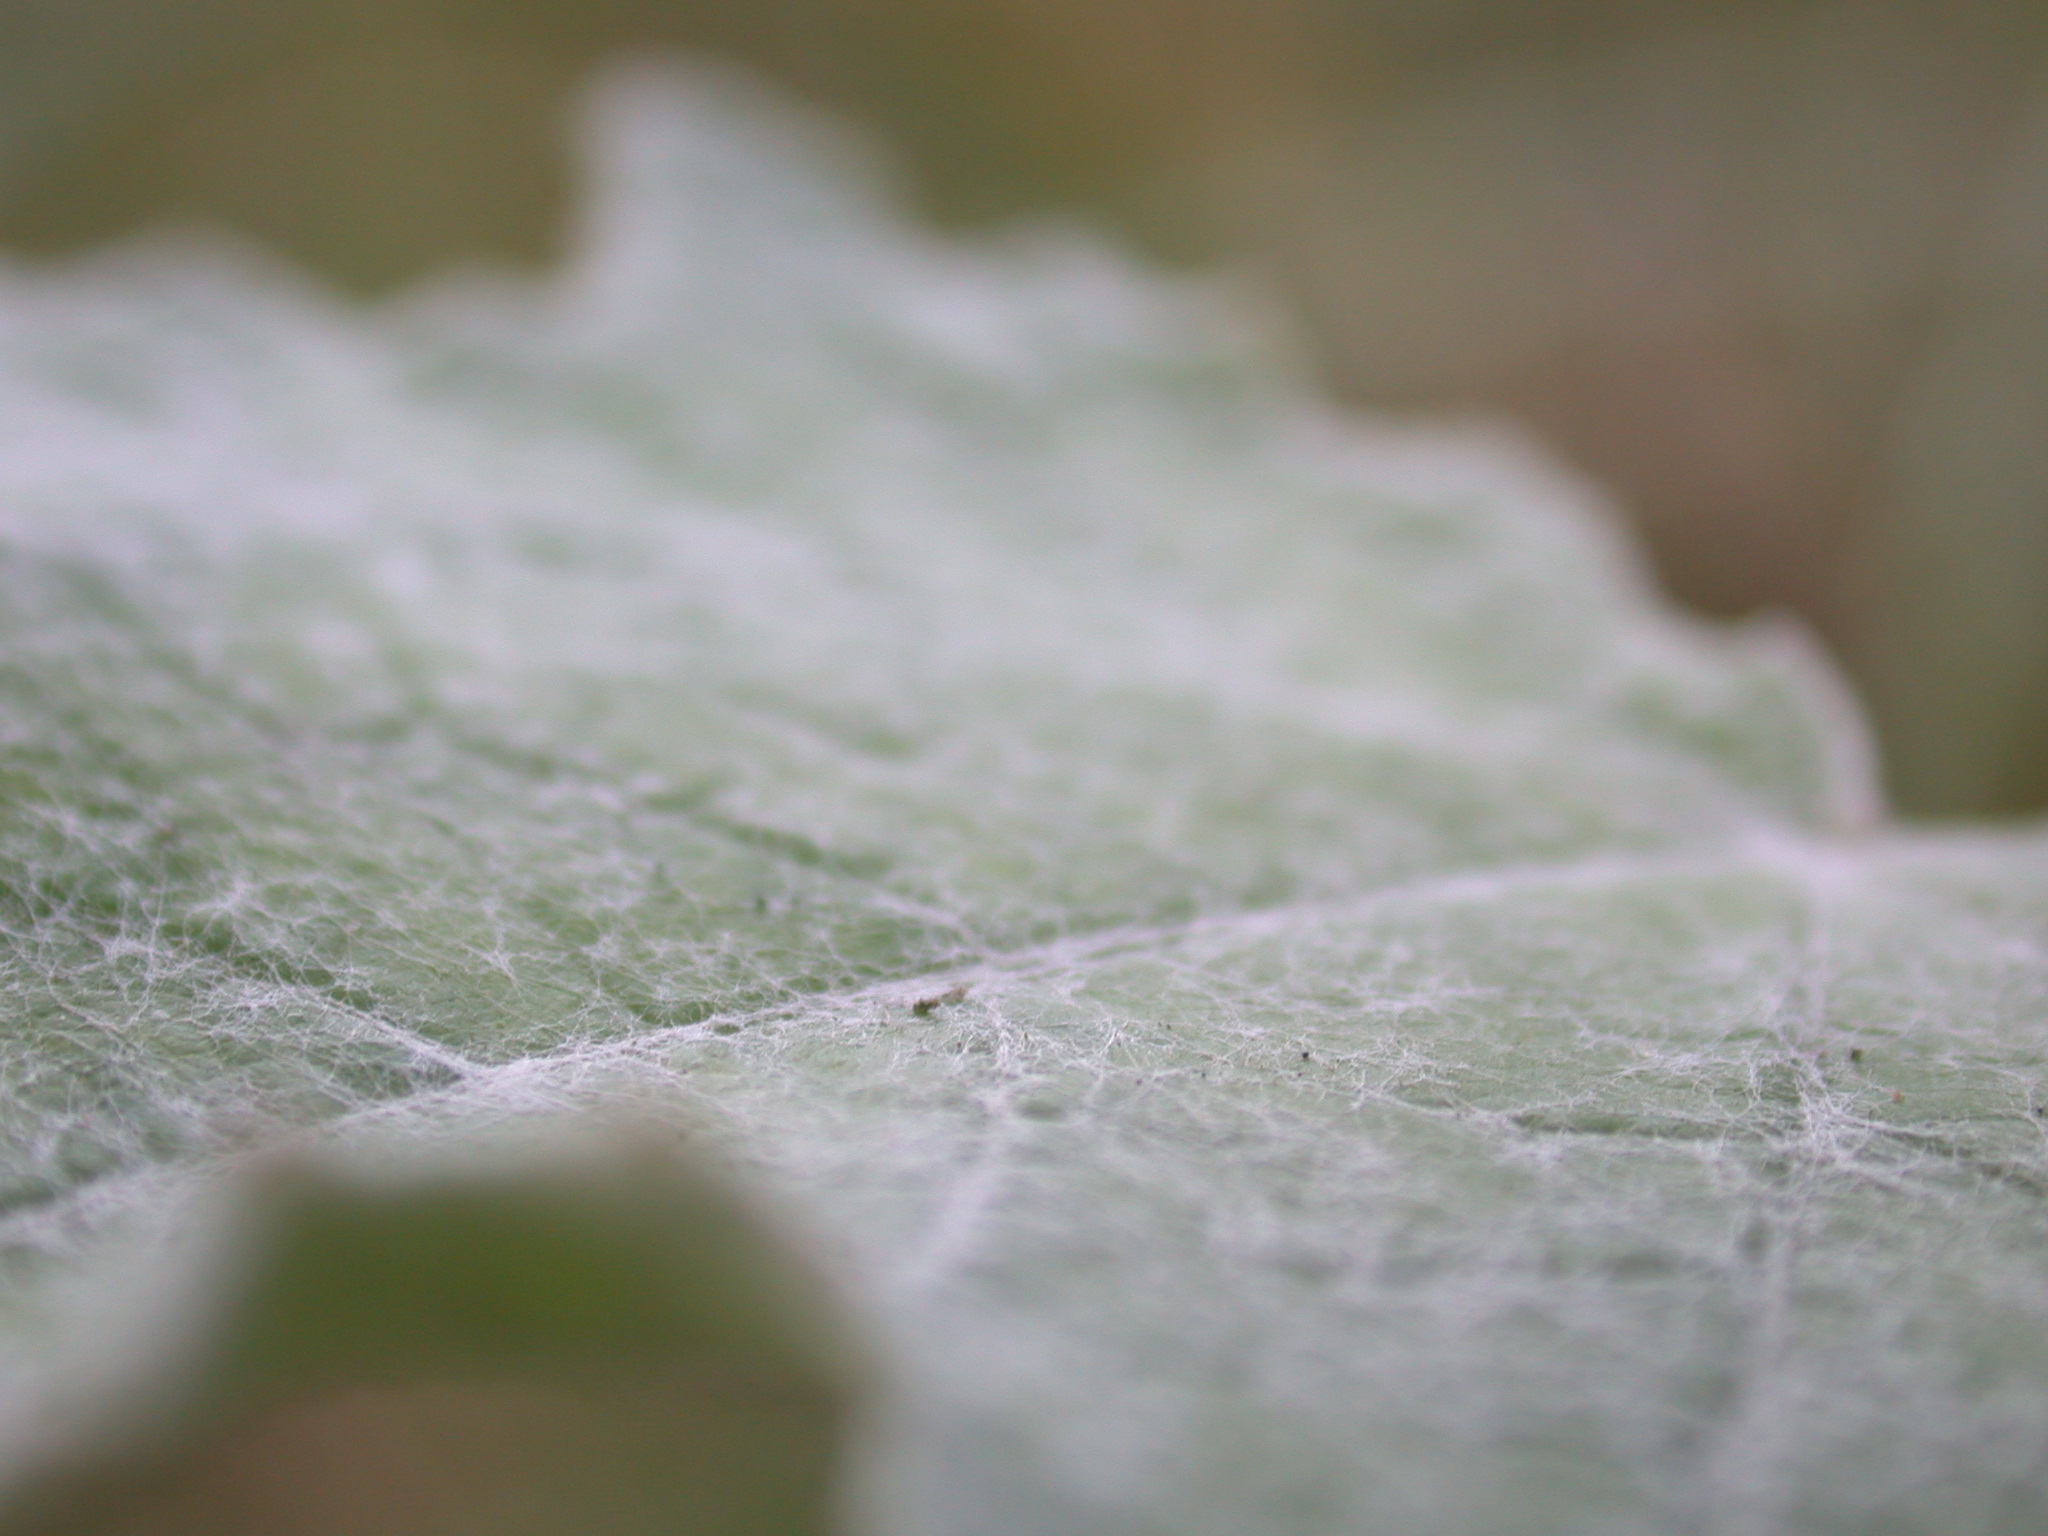 janneke leaf closeup dust dusty green web webbing